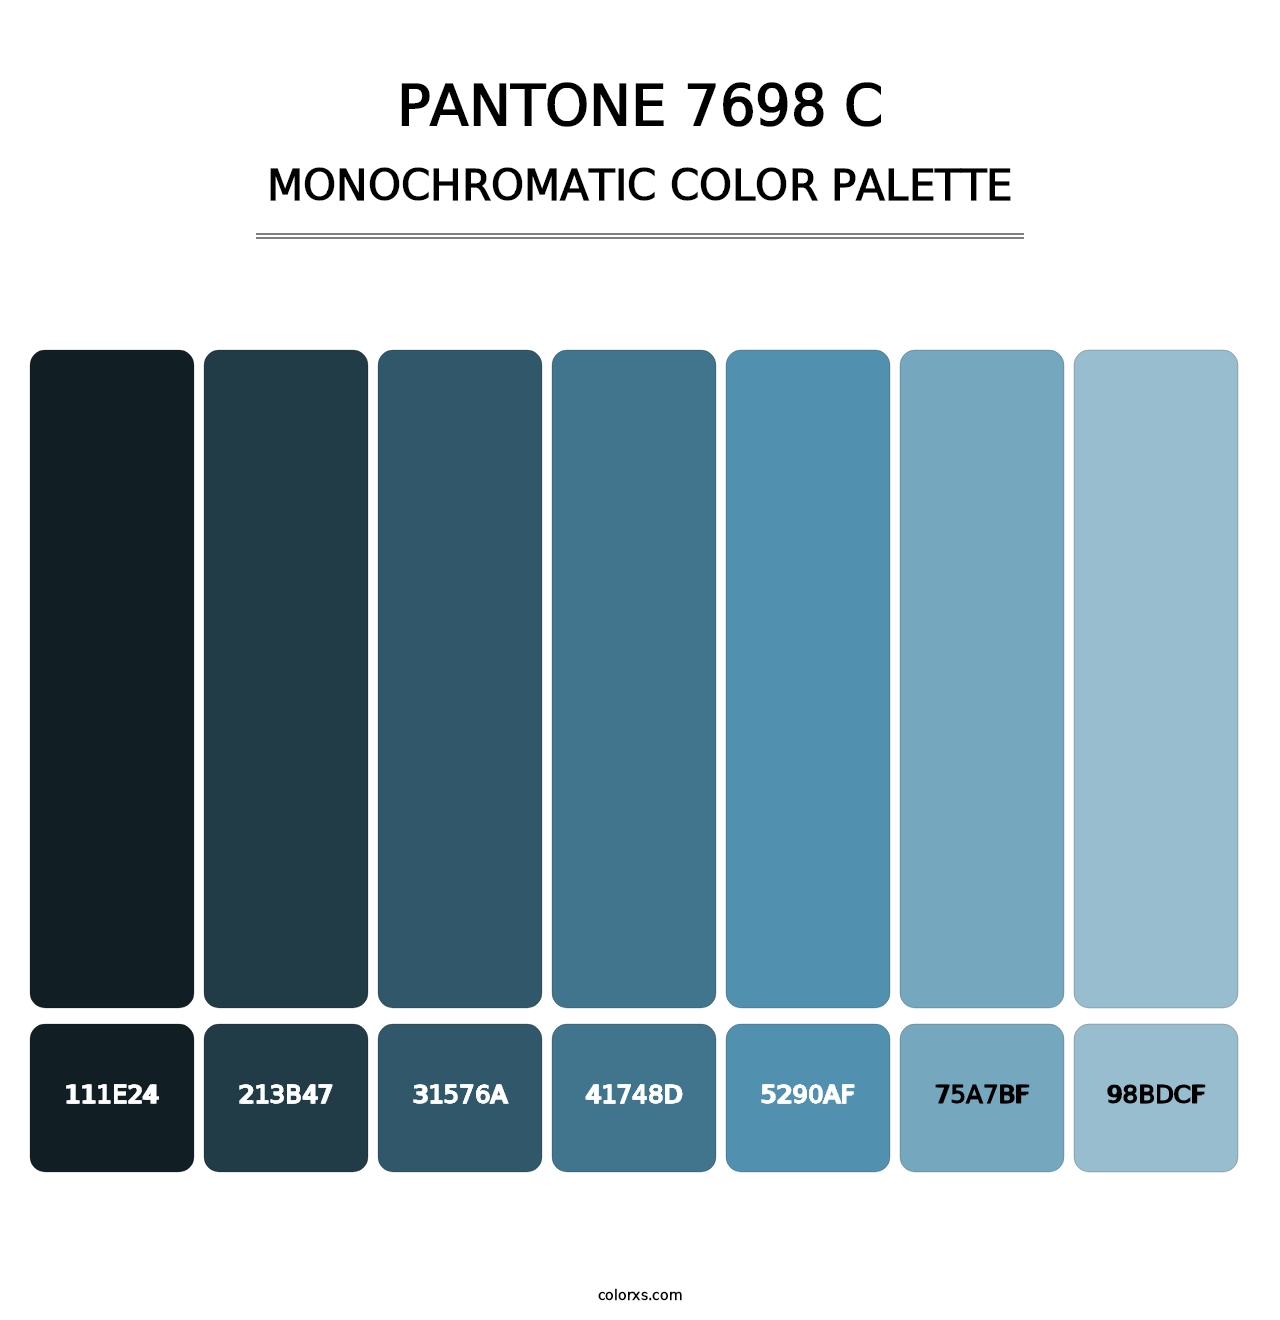 PANTONE 7698 C - Monochromatic Color Palette